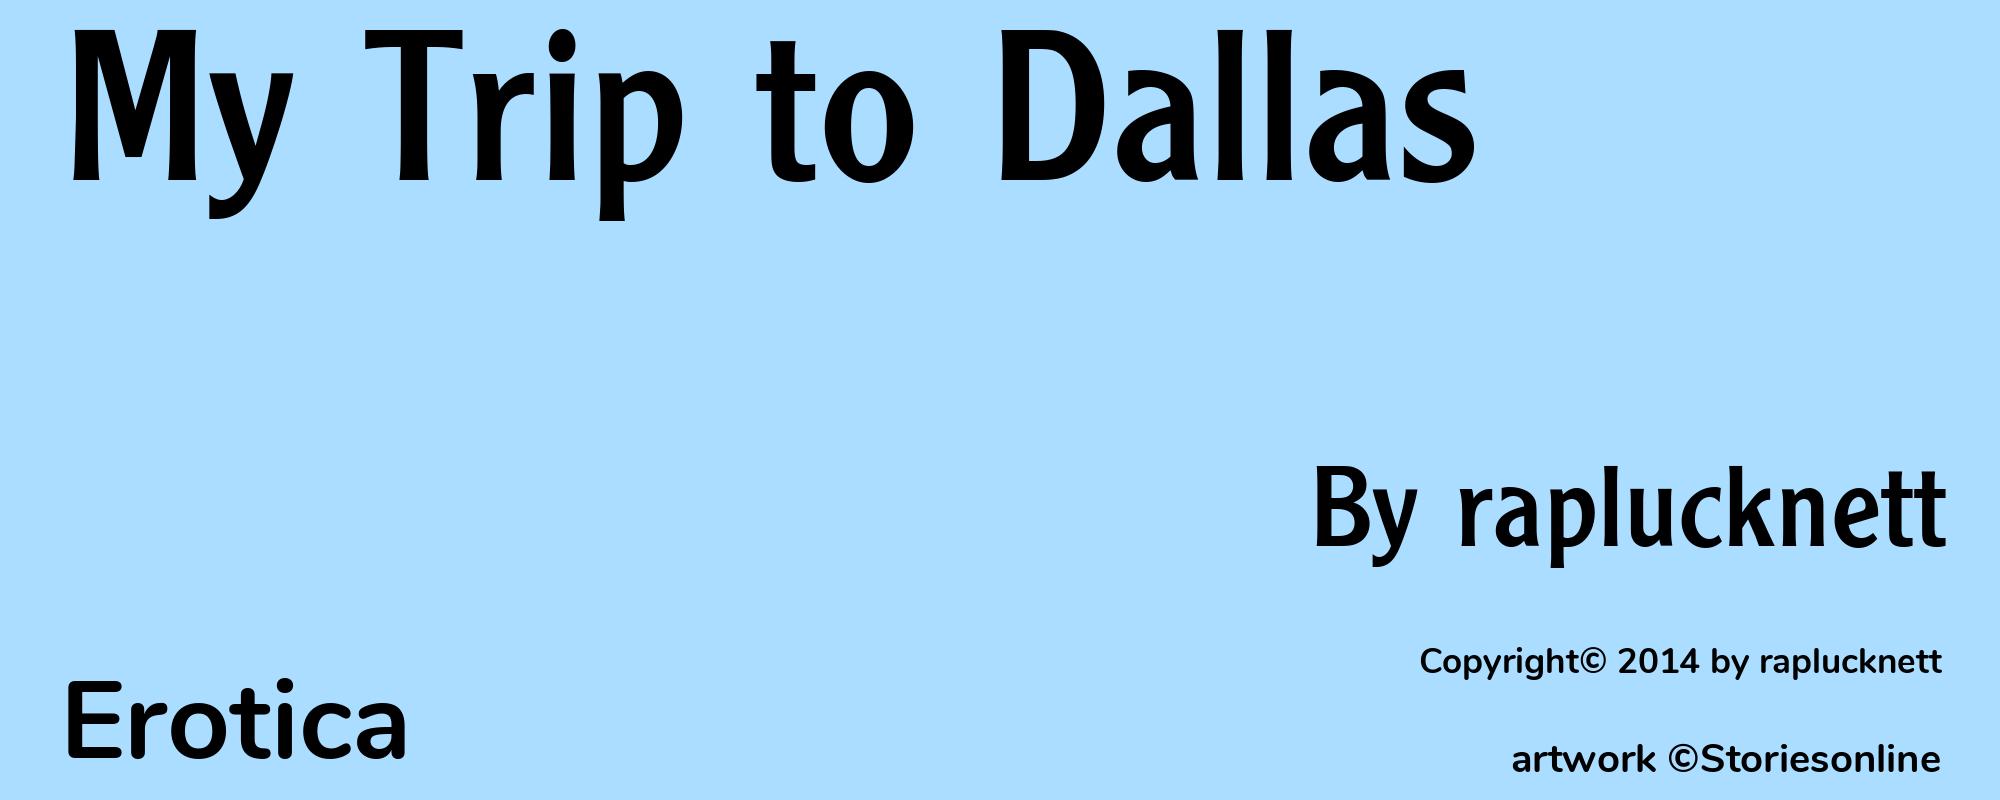 My Trip to Dallas - Cover